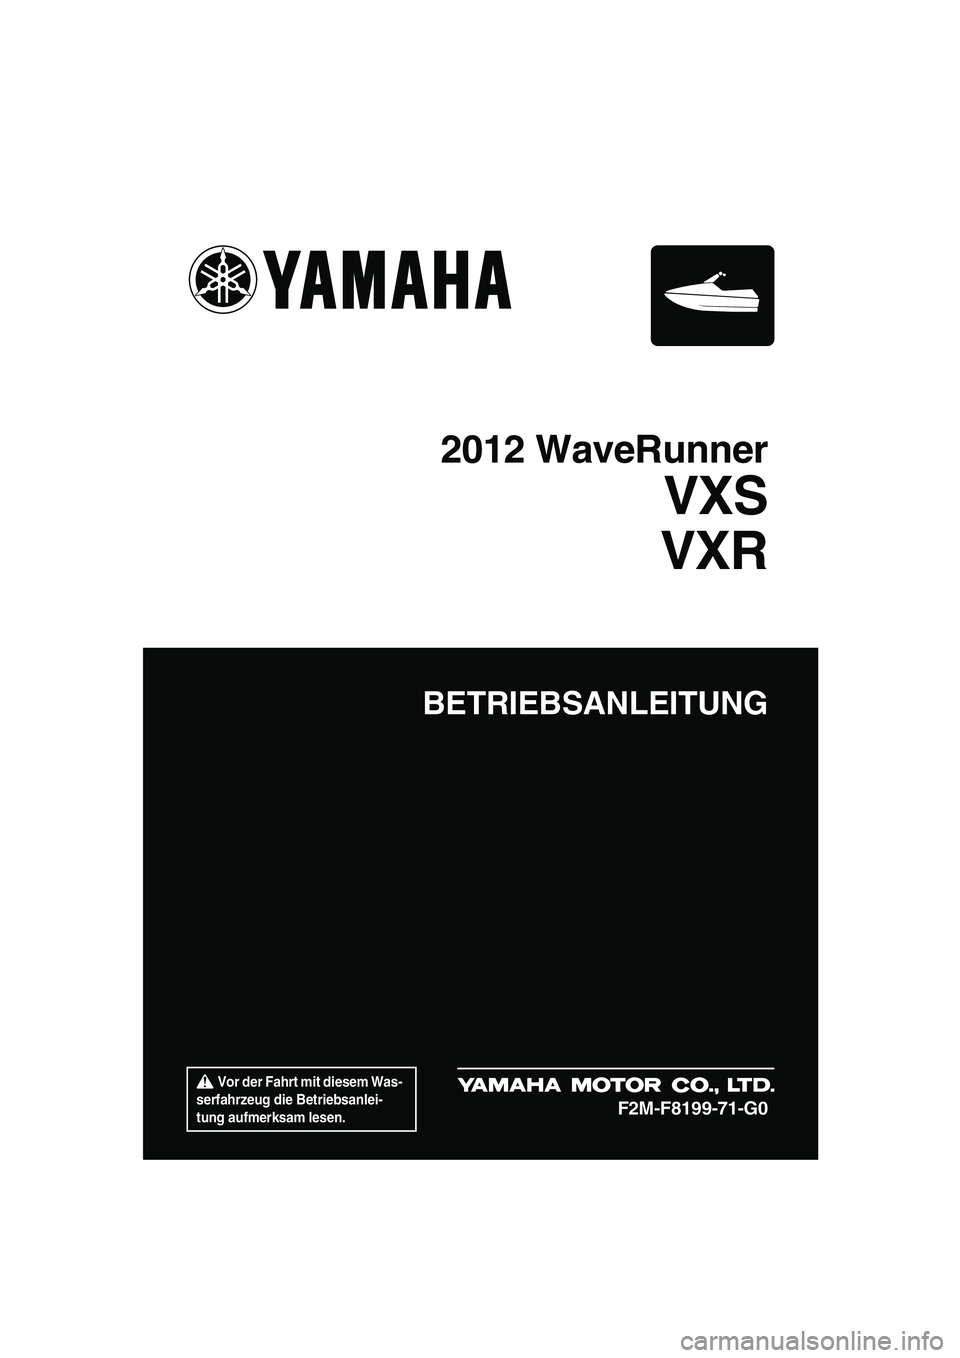 YAMAHA VXS 2012  Betriebsanleitungen (in German)  Vor der Fahrt mit diesem Was-
serfahrzeug die Betriebsanlei-
tung aufmerksam lesen.
BETRIEBSANLEITUNG
2012 WaveRunner
VXS
VXR
F2M-F8199-71-G0
UF2M71G0.book  Page 1  Monday, July 4, 2011  11:10 AM 